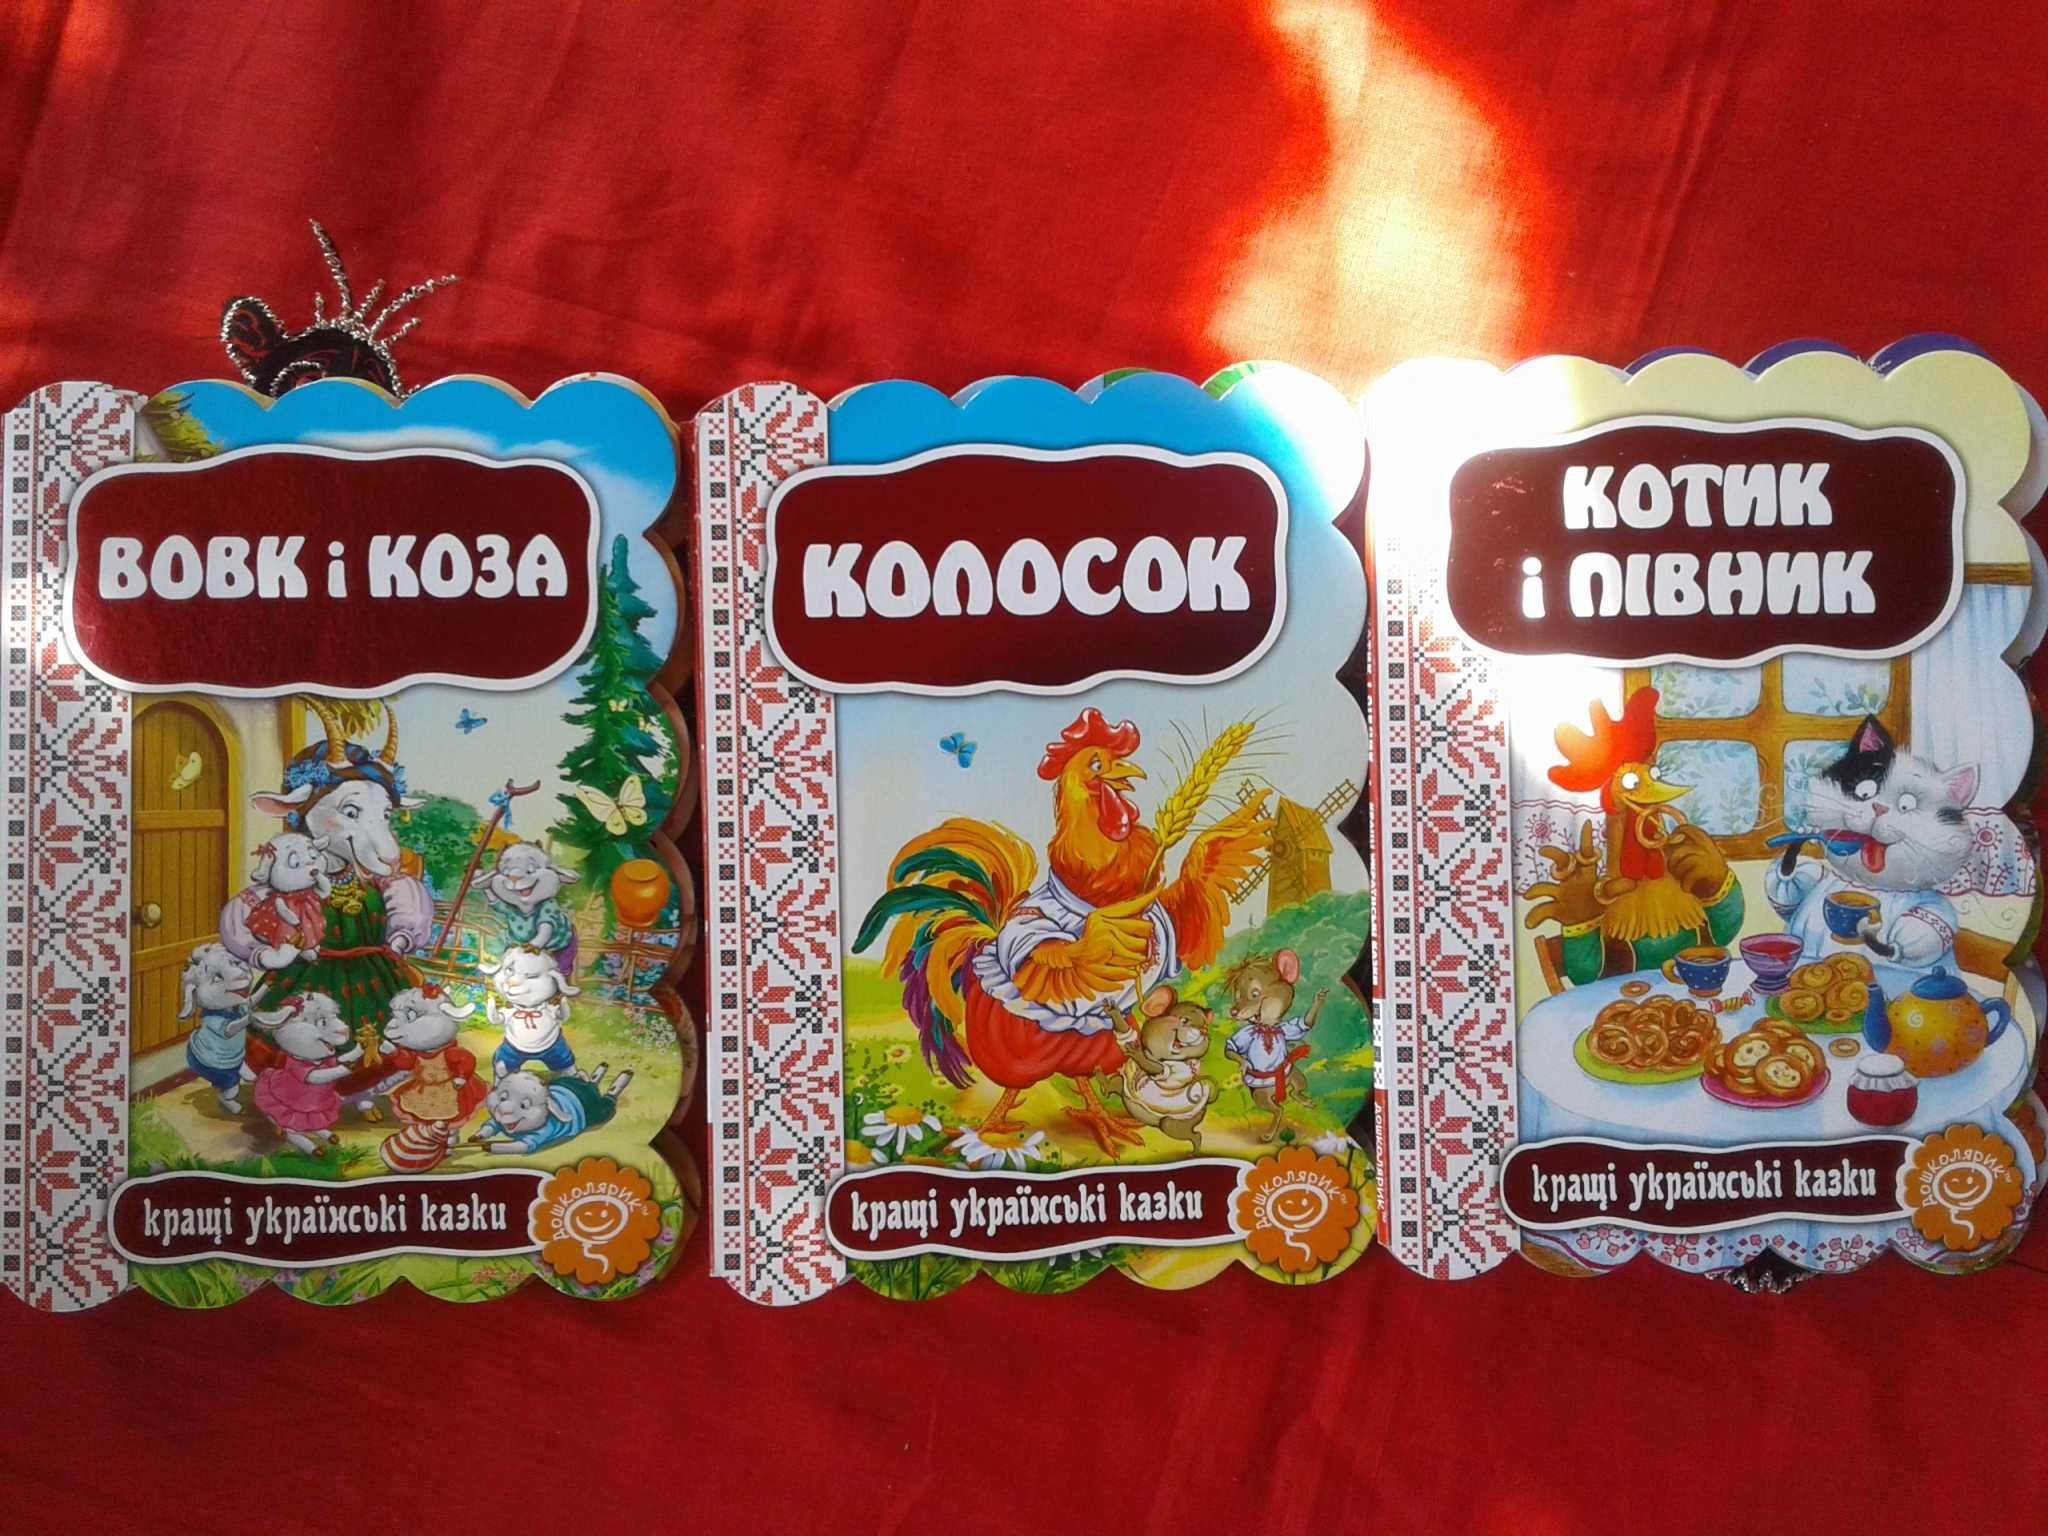 Українські казки дітям, картонки нові, Школа дошколярик